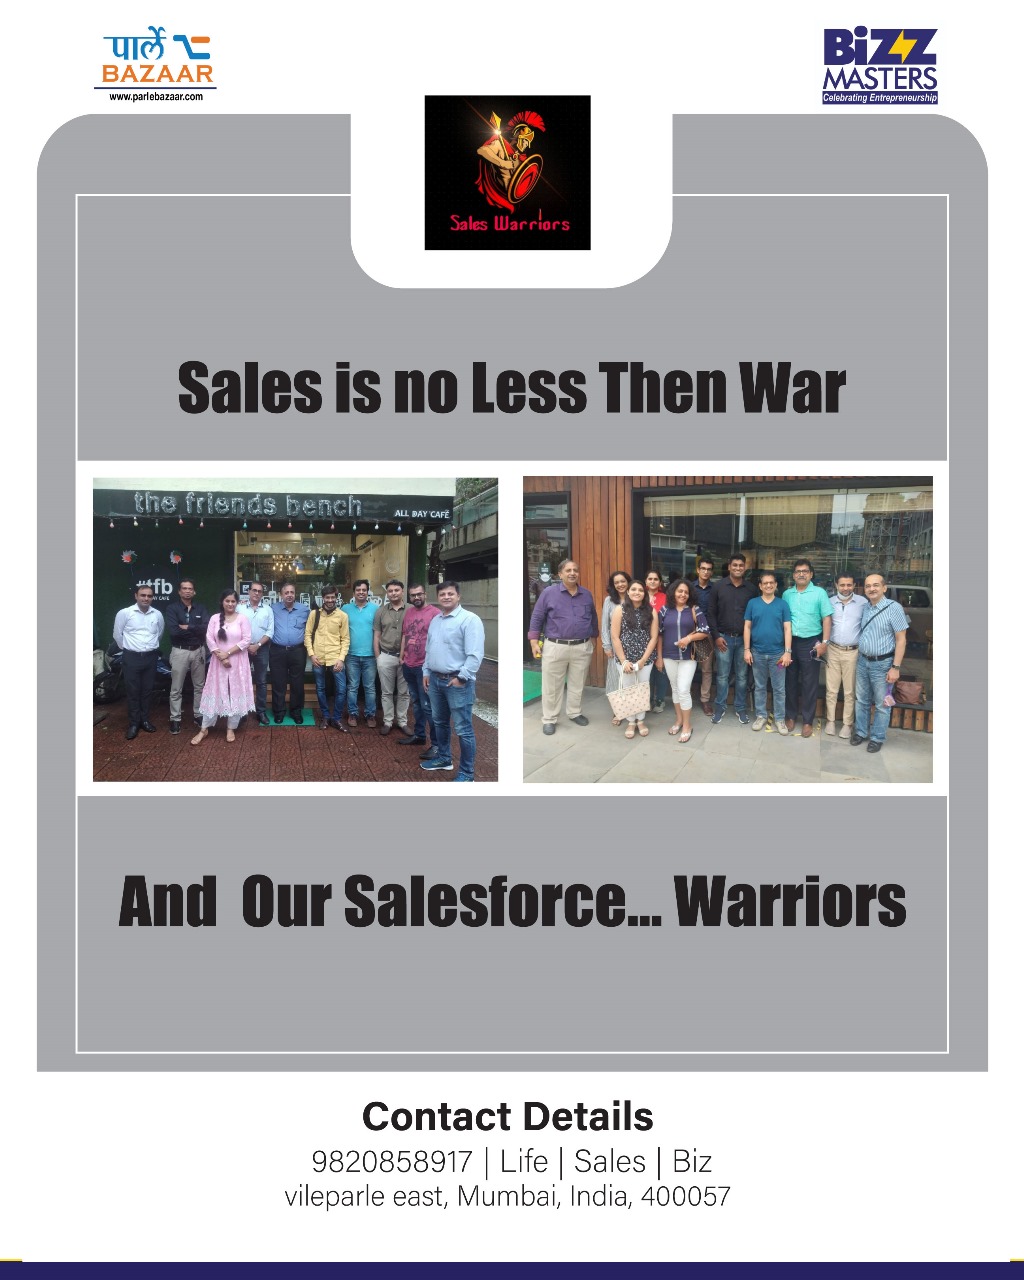 Sales Warriors